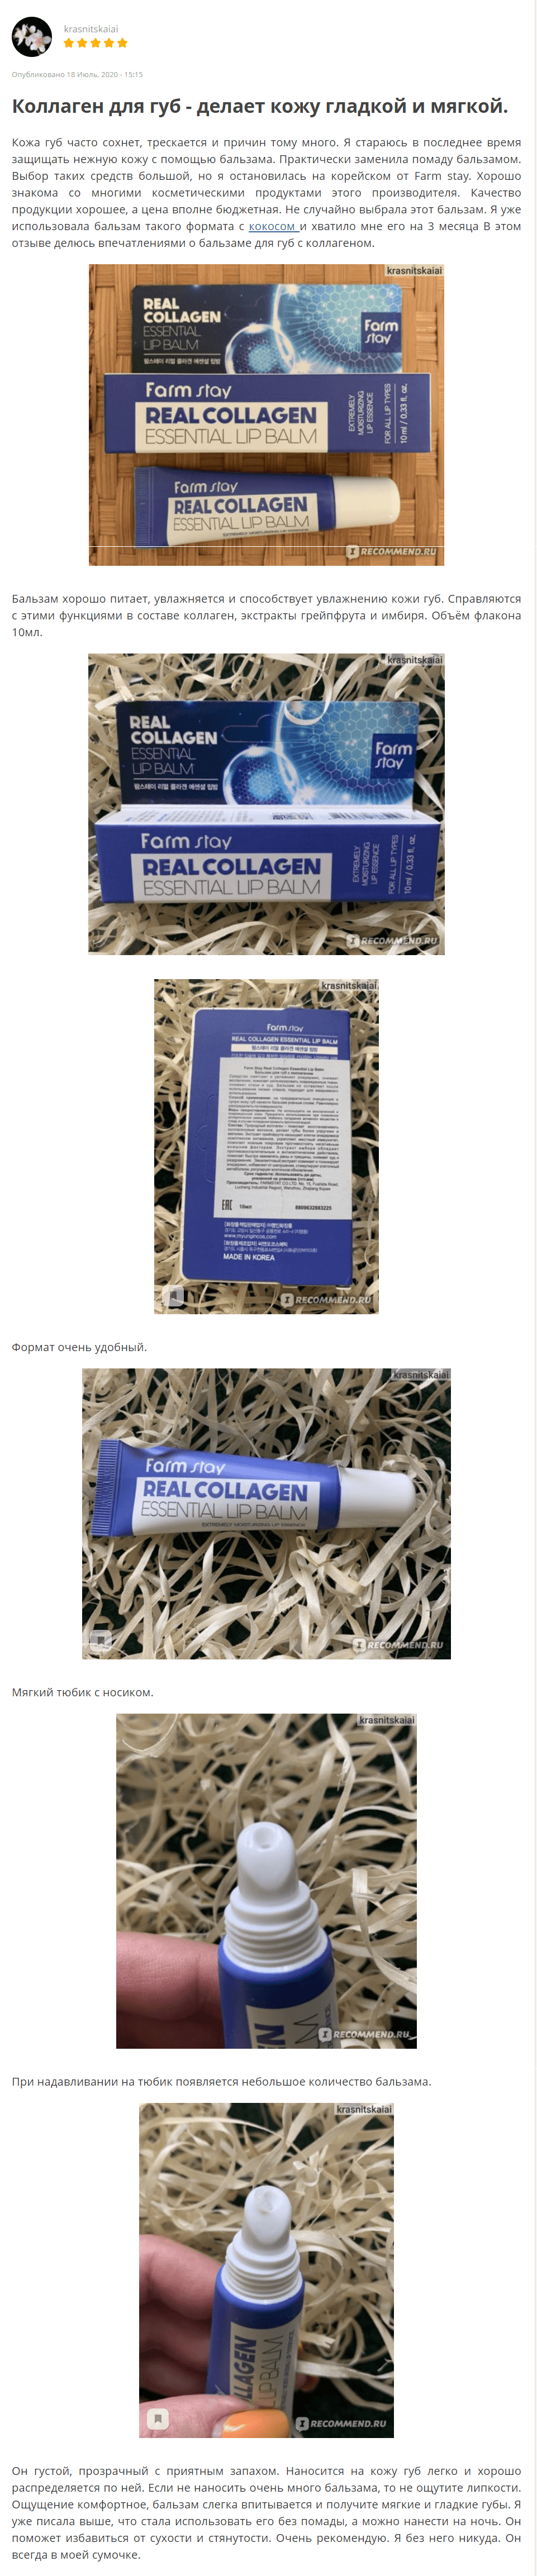 Real Collagen Essential Lip Balm [FarmStay] отзыв 1 (1)